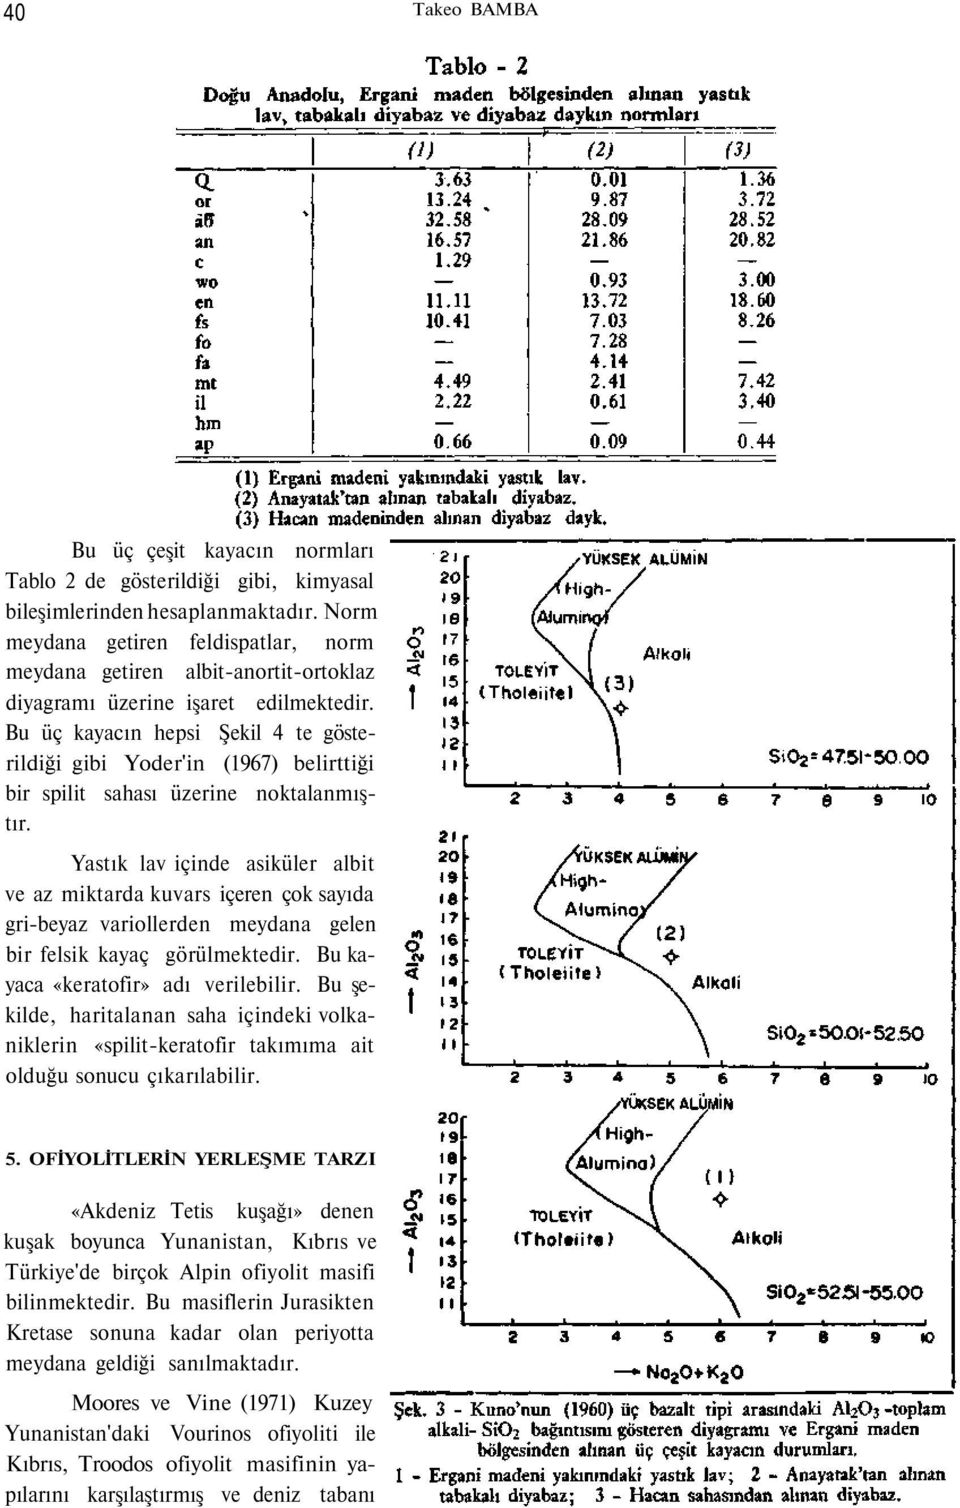 Bu üç kayacın hepsi Şekil 4 te gösterildiği gibi Yoder'in (1967) belirttiği bir spilit sahası üzerine noktalanmıştır.